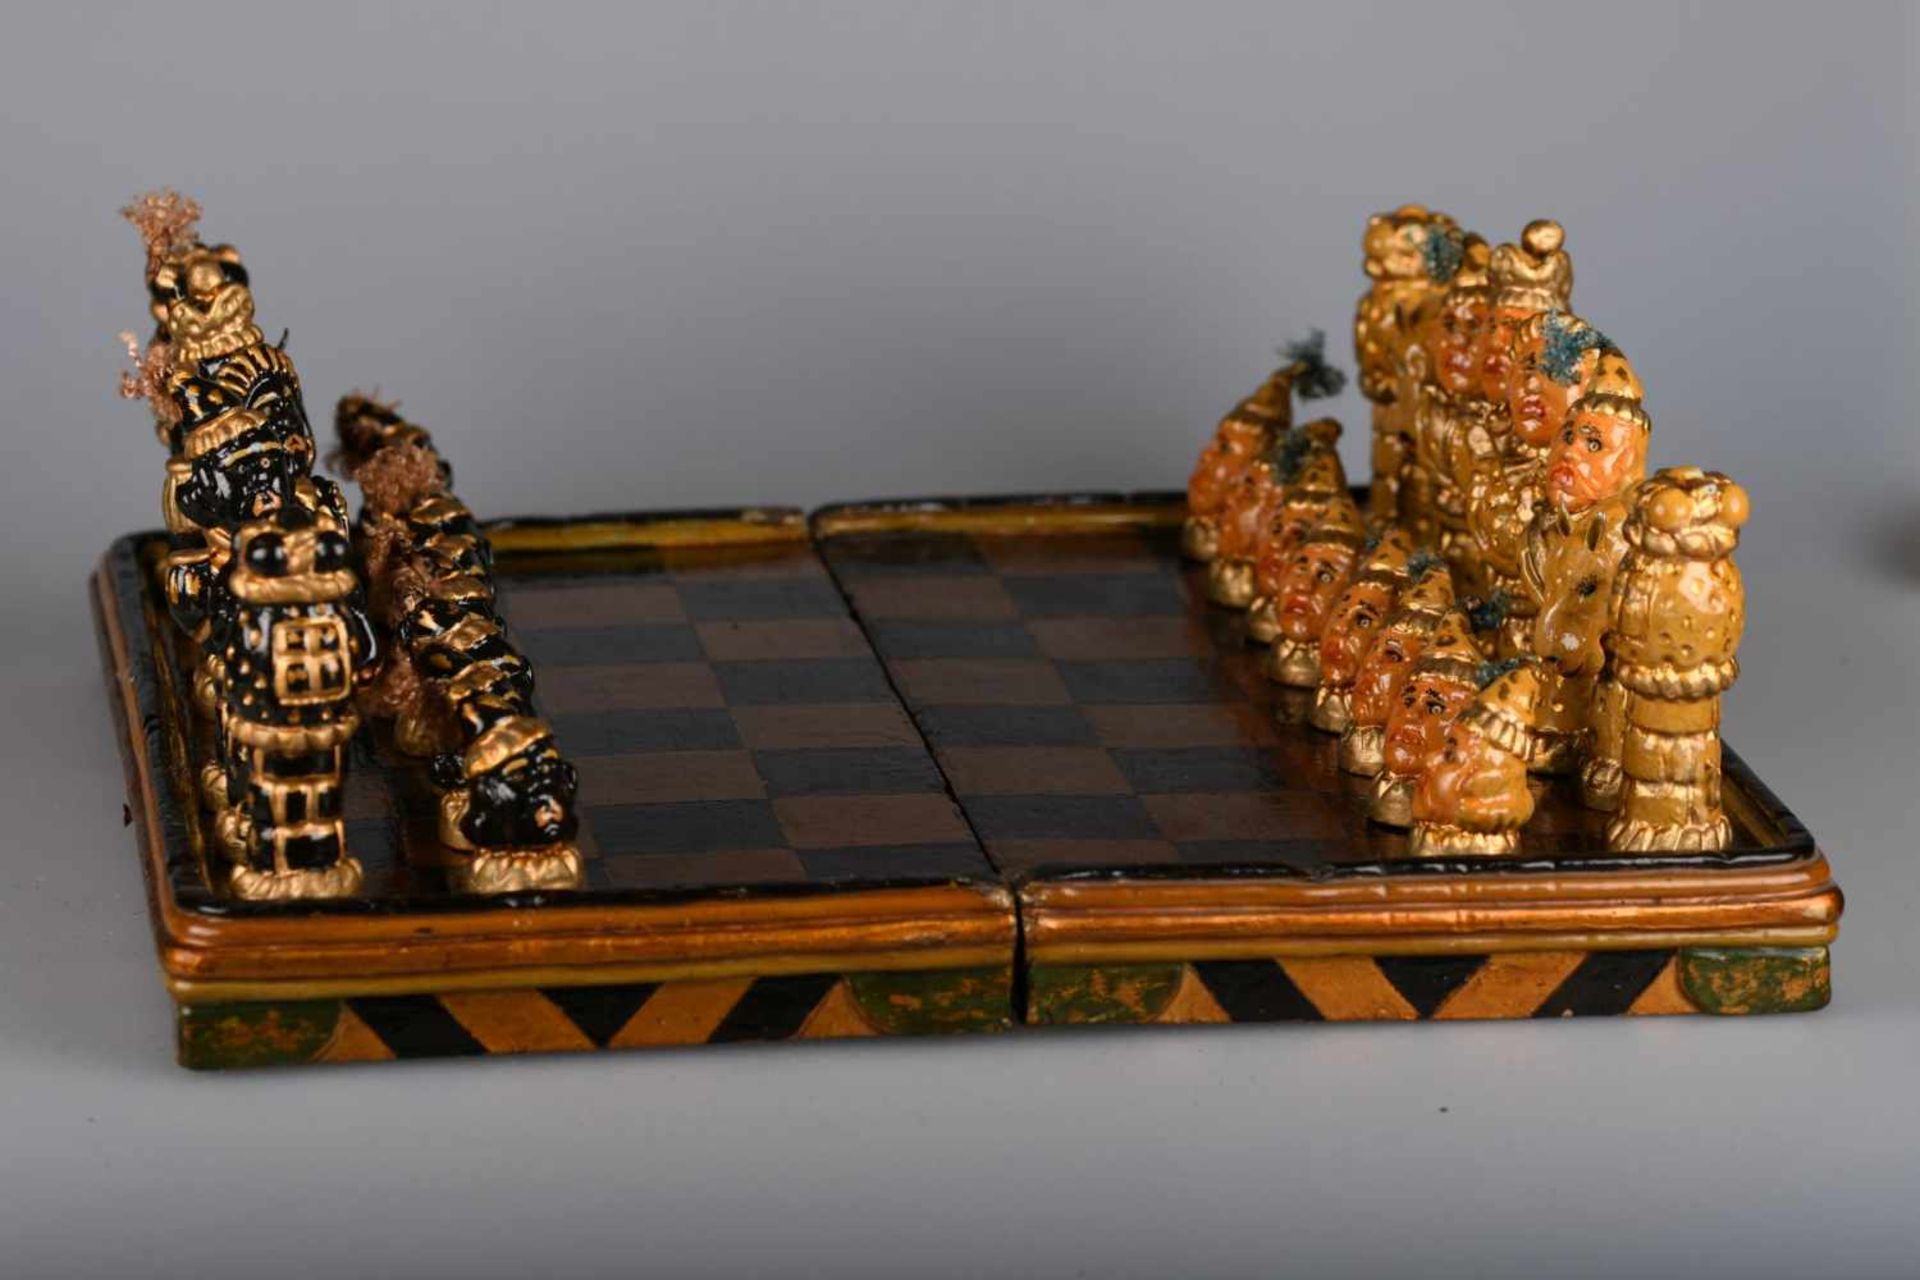 Kurioses SchachspielAufklappbare hölzerne Schatulle mit aufgemalten schwarzen und goldbronzenen